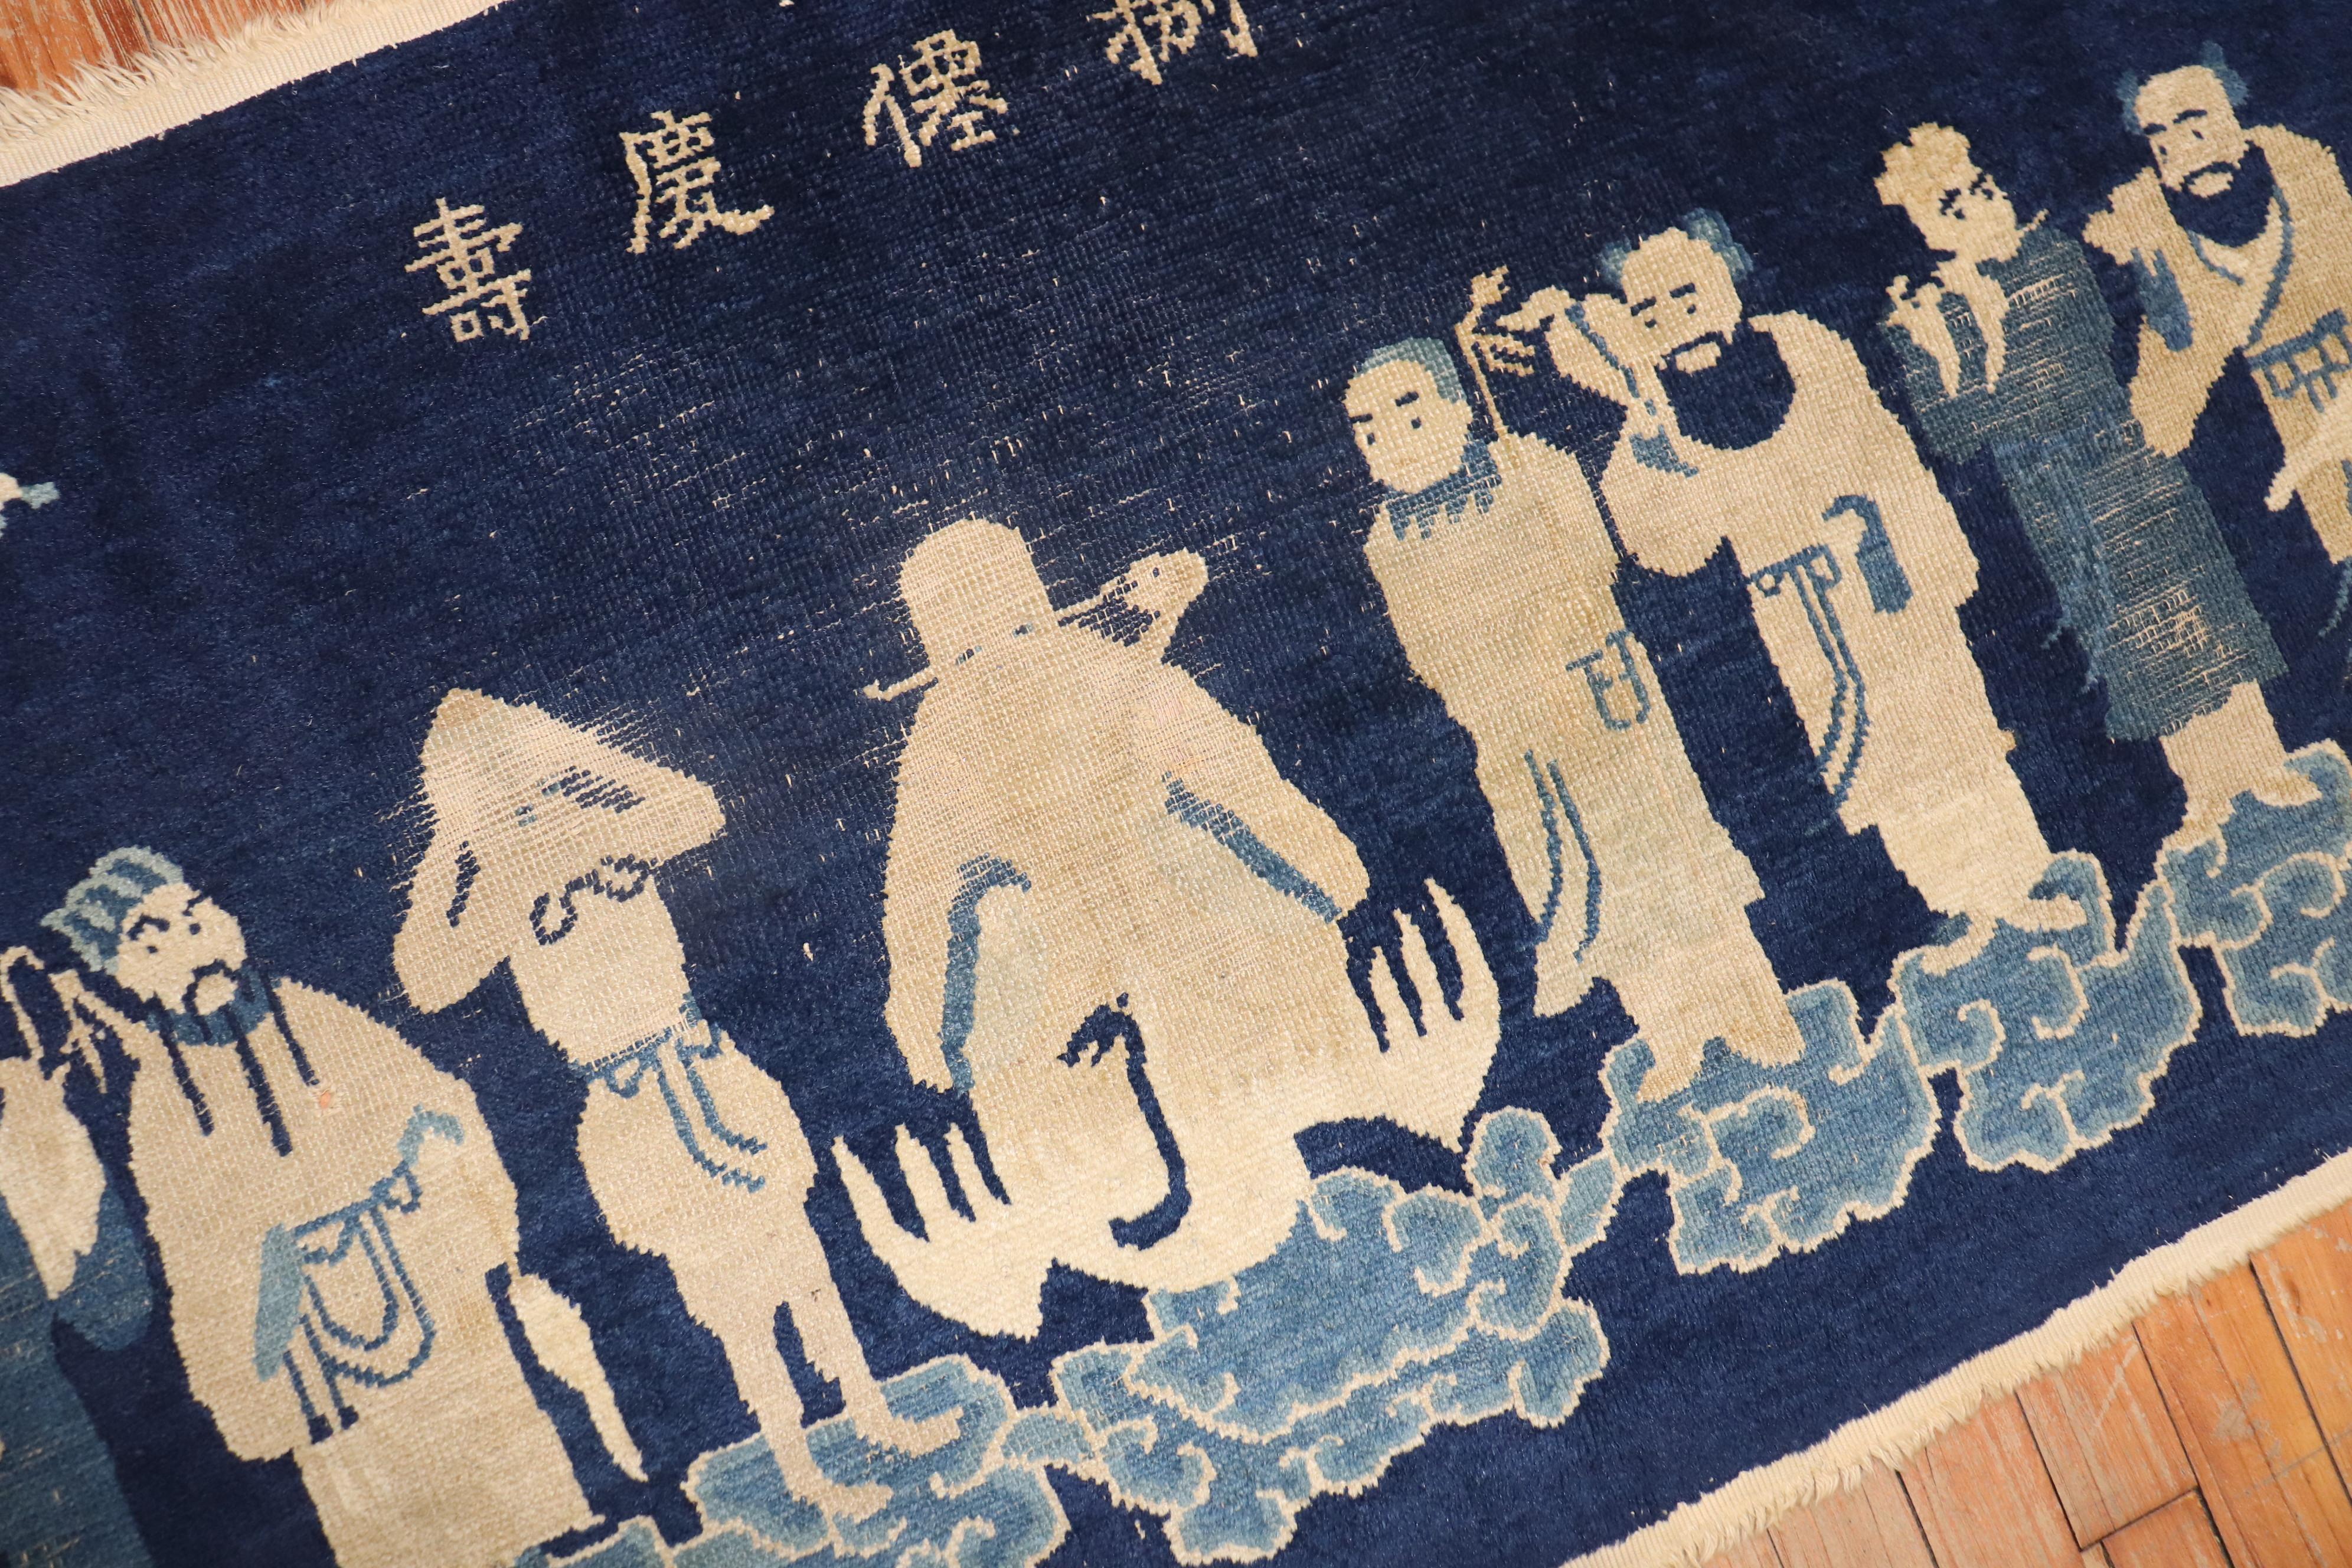 Chinesischer Buddha-Zickzack-Teppich aus dem frühen 20. Jahrhundert

Maße: 1,42 m x 1,83 m (2'4 x 6').